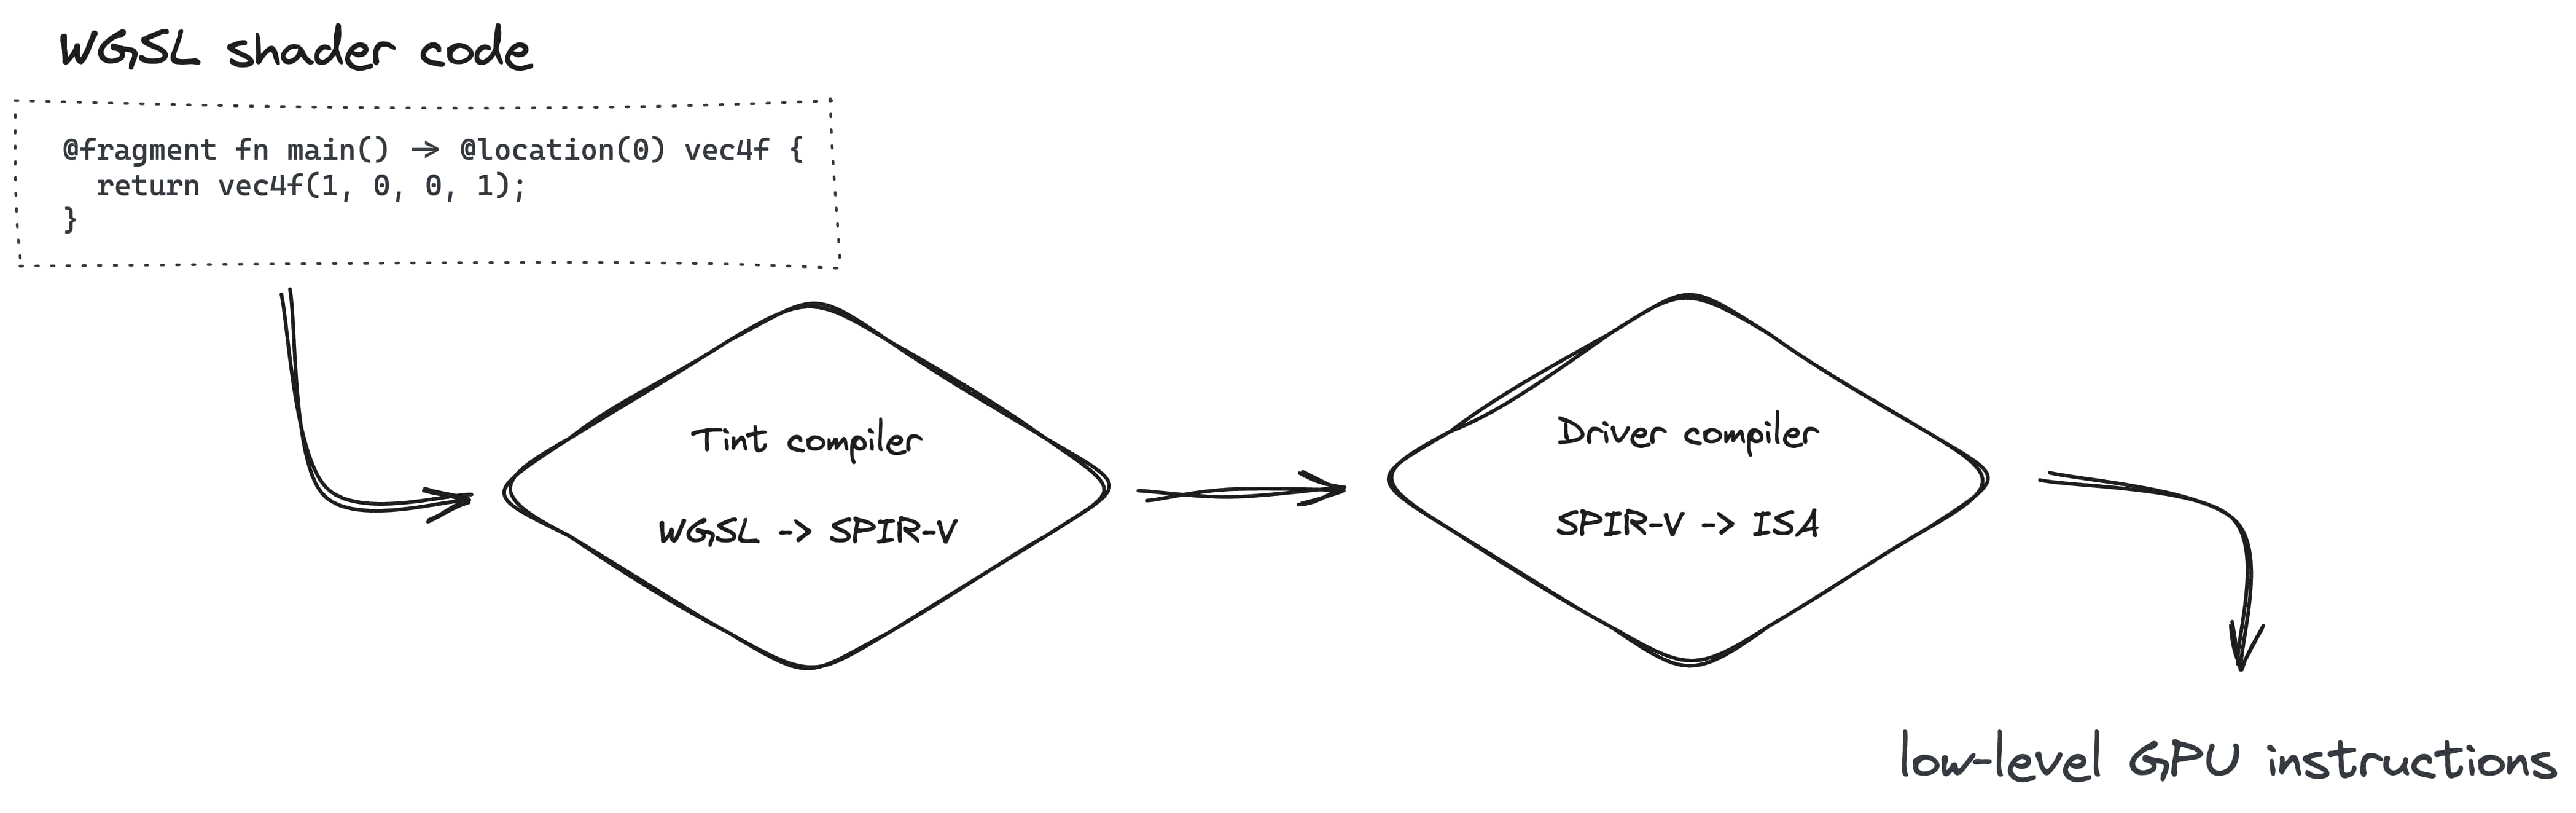 يتضمن إنشاء مسار العرض تحويل WGSL إلى SPIR-V باستخدام برنامج التحويل البرمجي Tint، ثم إلى ISA باستخدام برنامج التشغيل البرمجي.